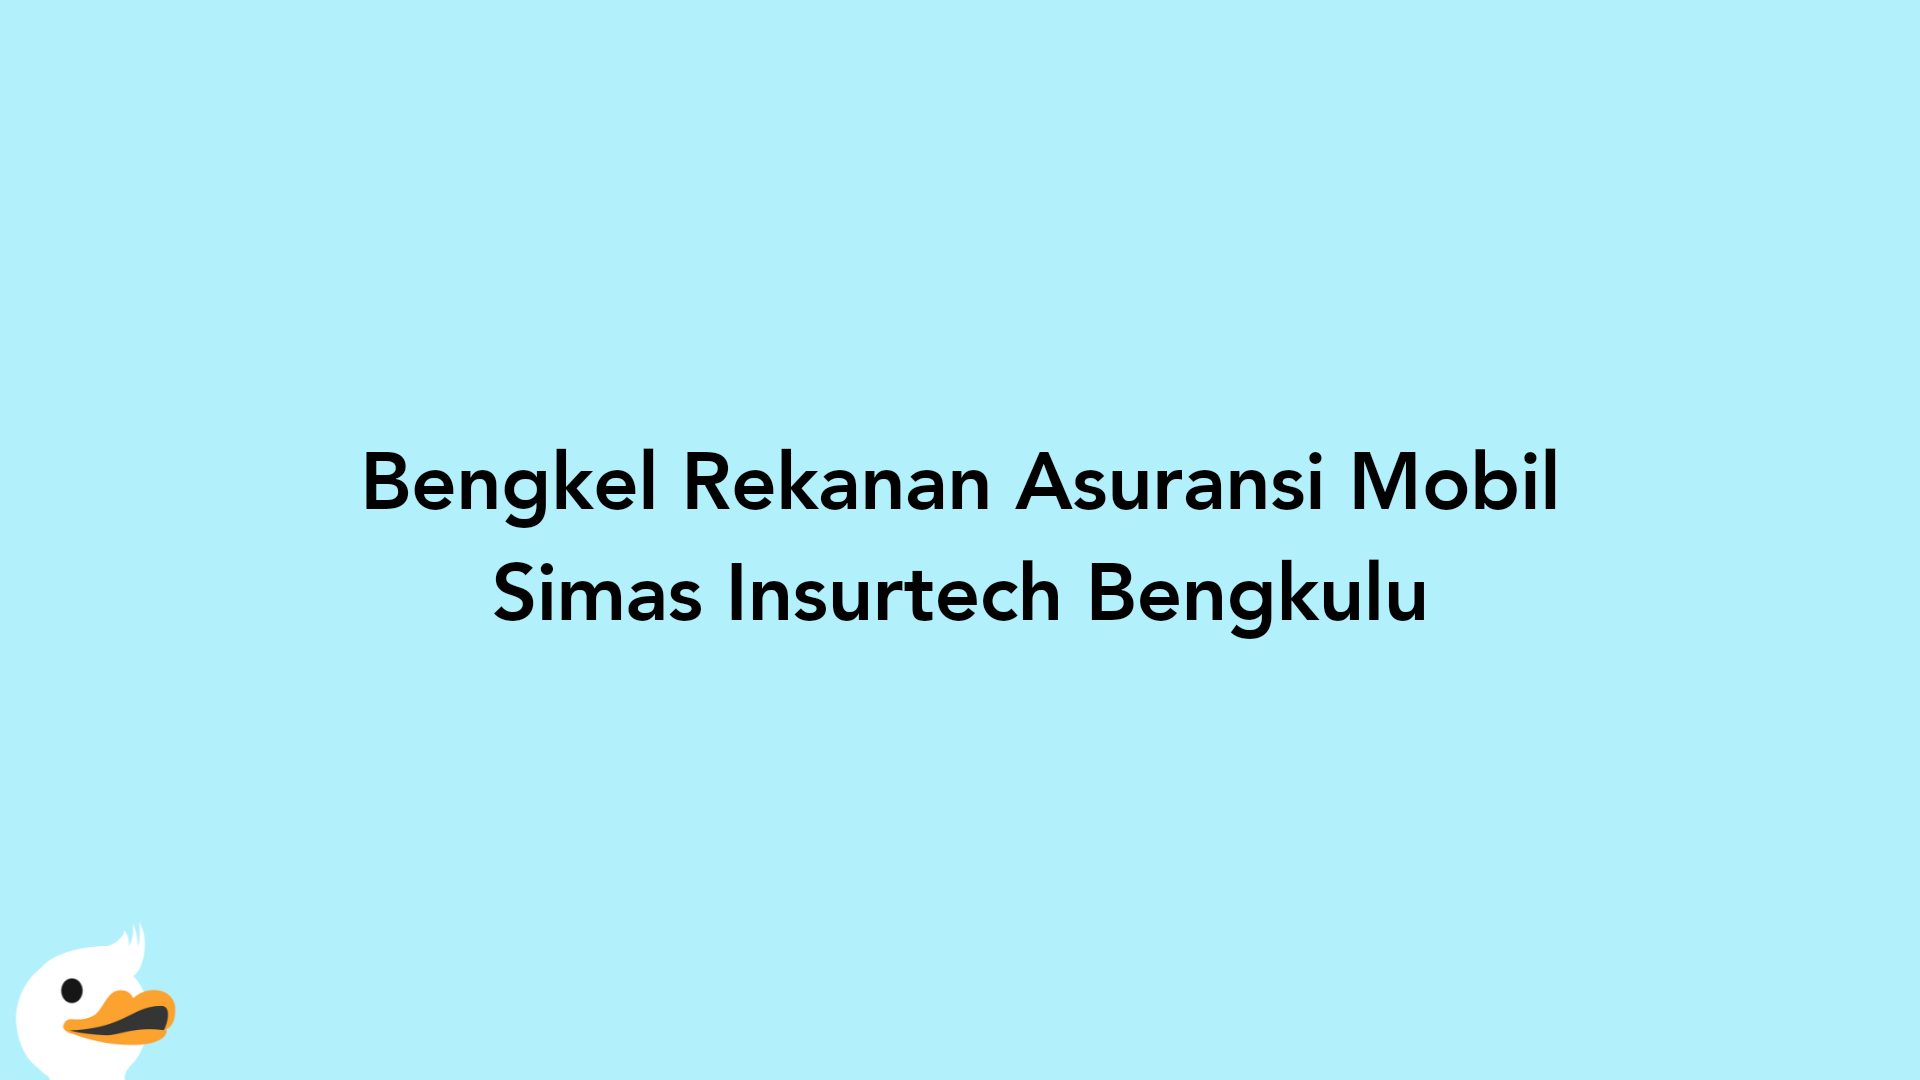 Bengkel Rekanan Asuransi Mobil Simas Insurtech Bengkulu